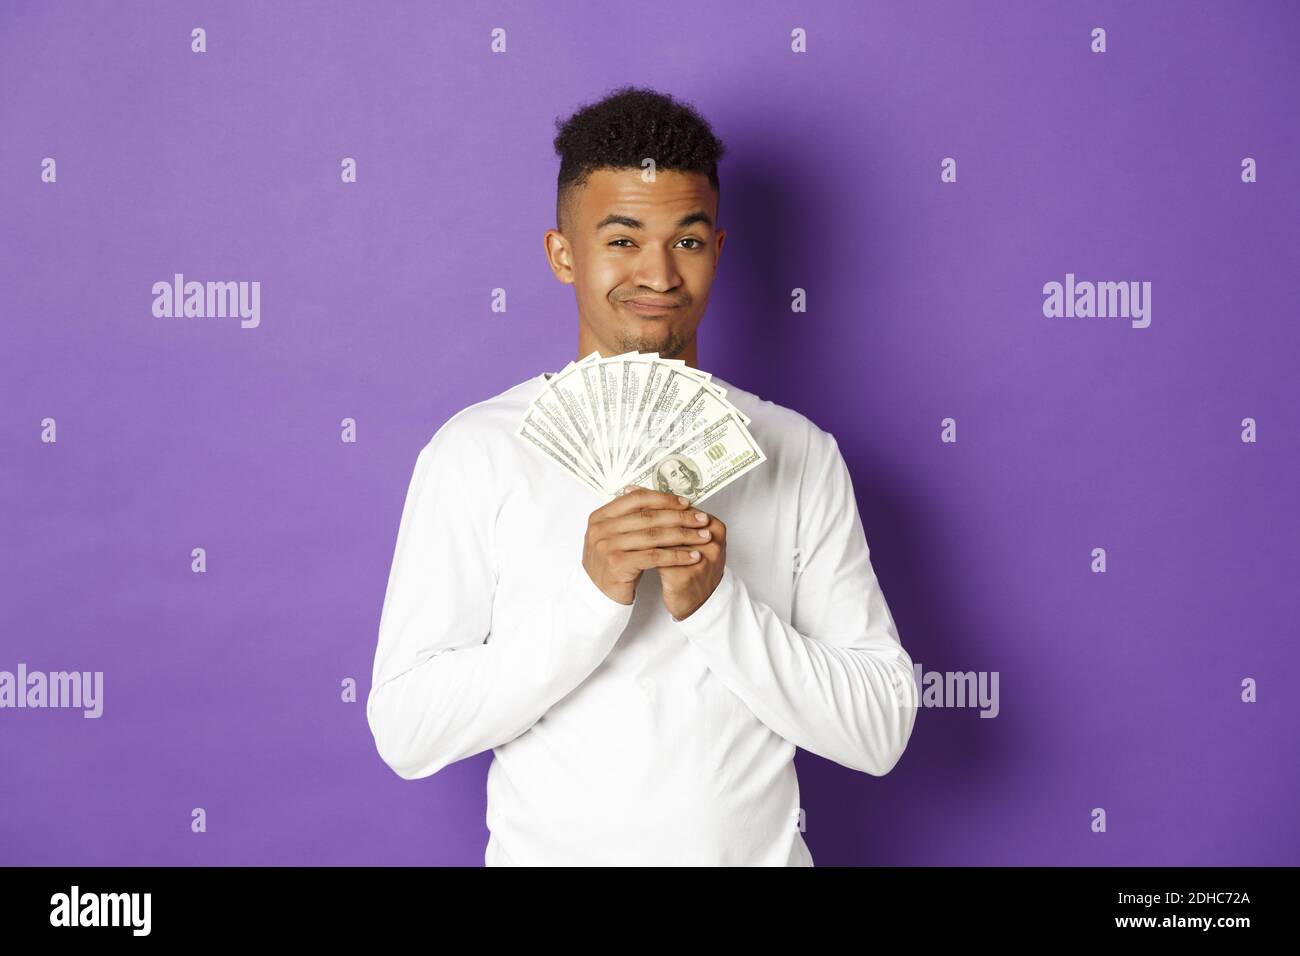 Un gars afro-américain méchant, qui se vante et montre une grosse somme d'argent, qui gagne à la loterie ou qui a obtenu un prêt, se tenant sur fond violet Banque D'Images